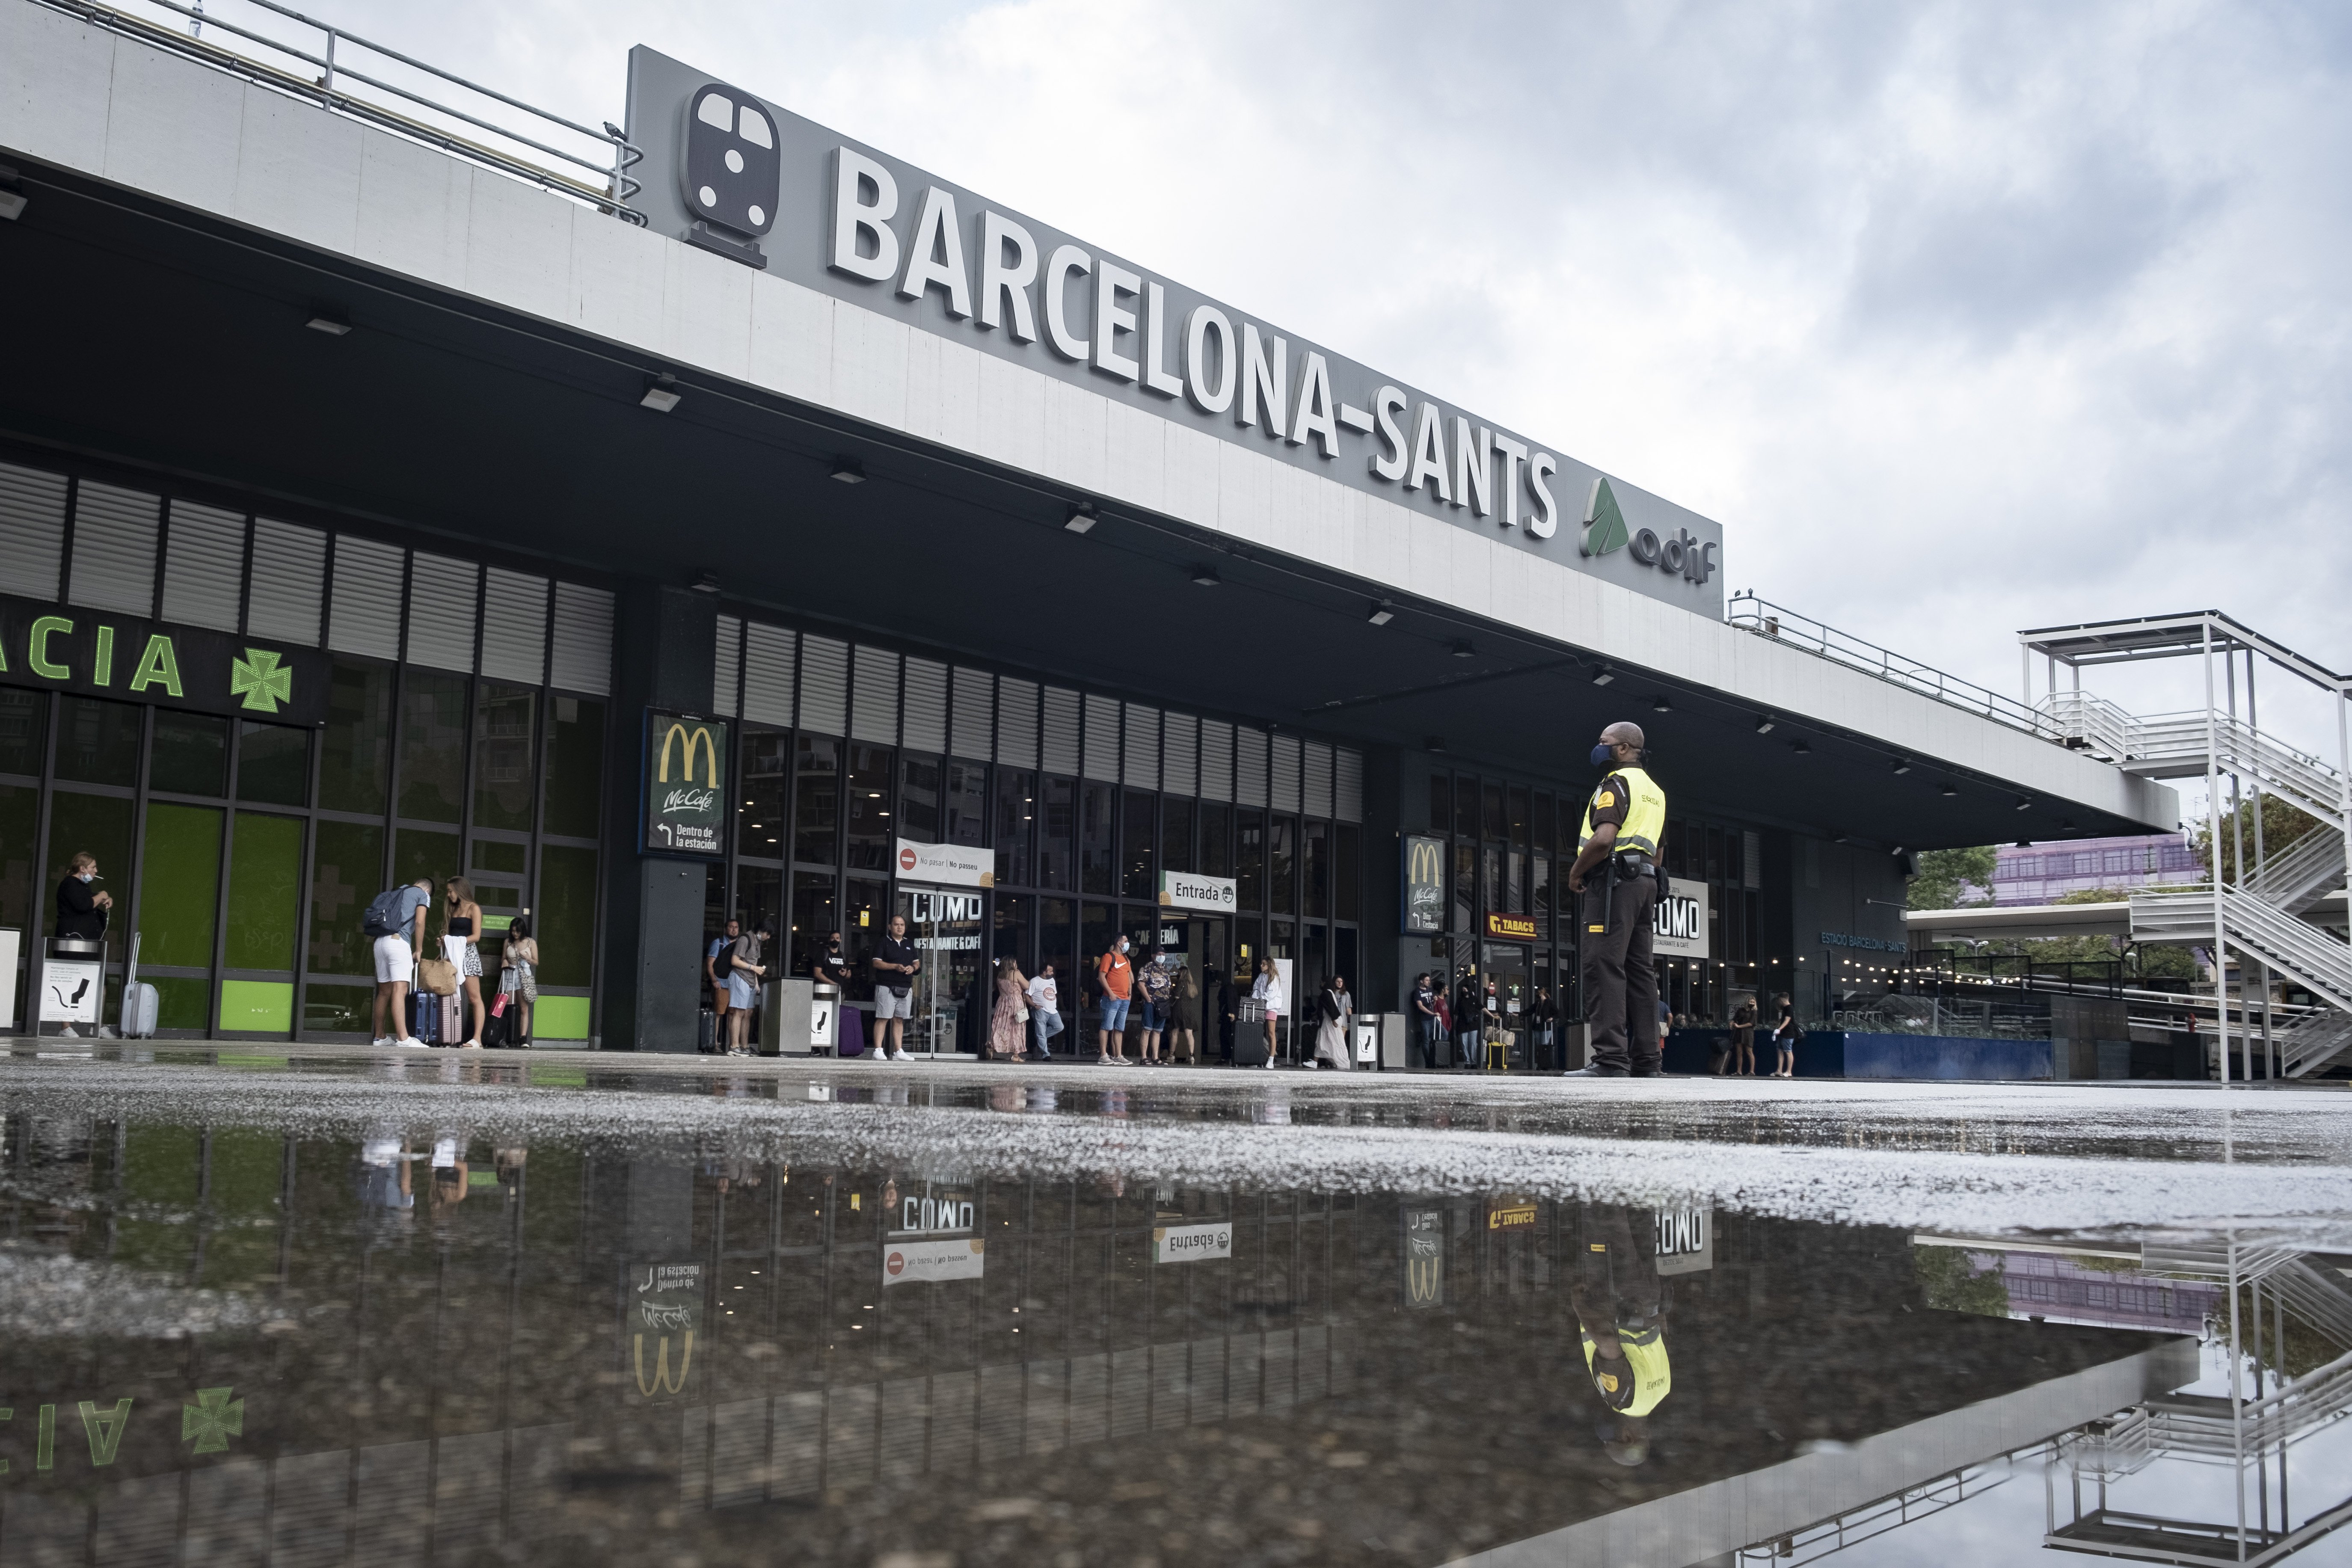 Estació de Sants, seguridad, prosegur, Barcelona   Carlos Baglietto